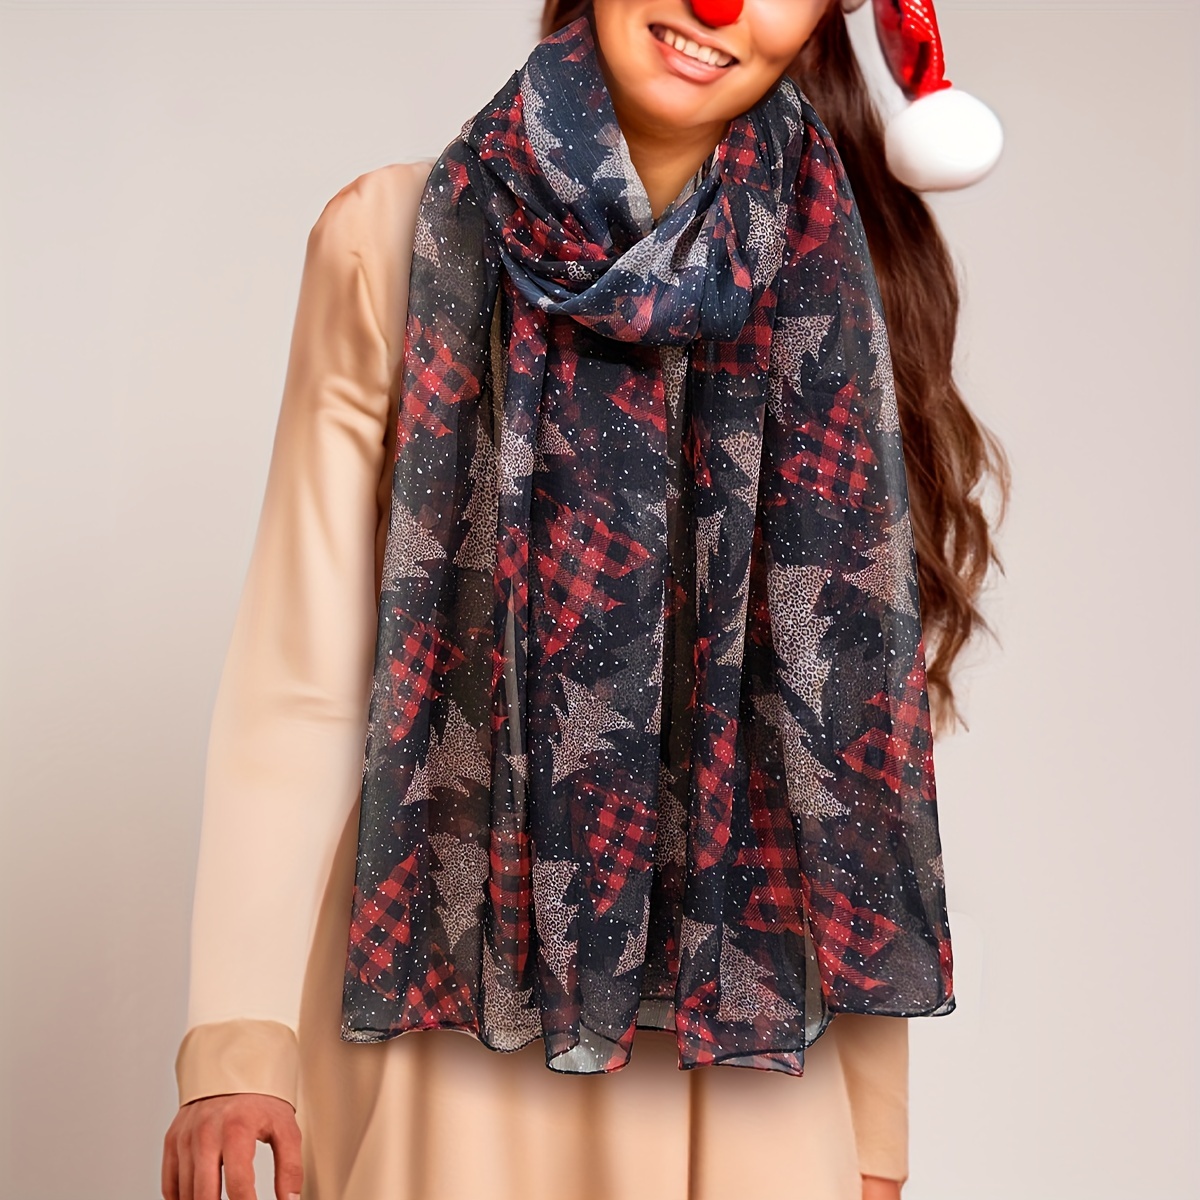 EHTMSAK Teacher Scarves for Women Solid Soft Tassel Christmas Warm